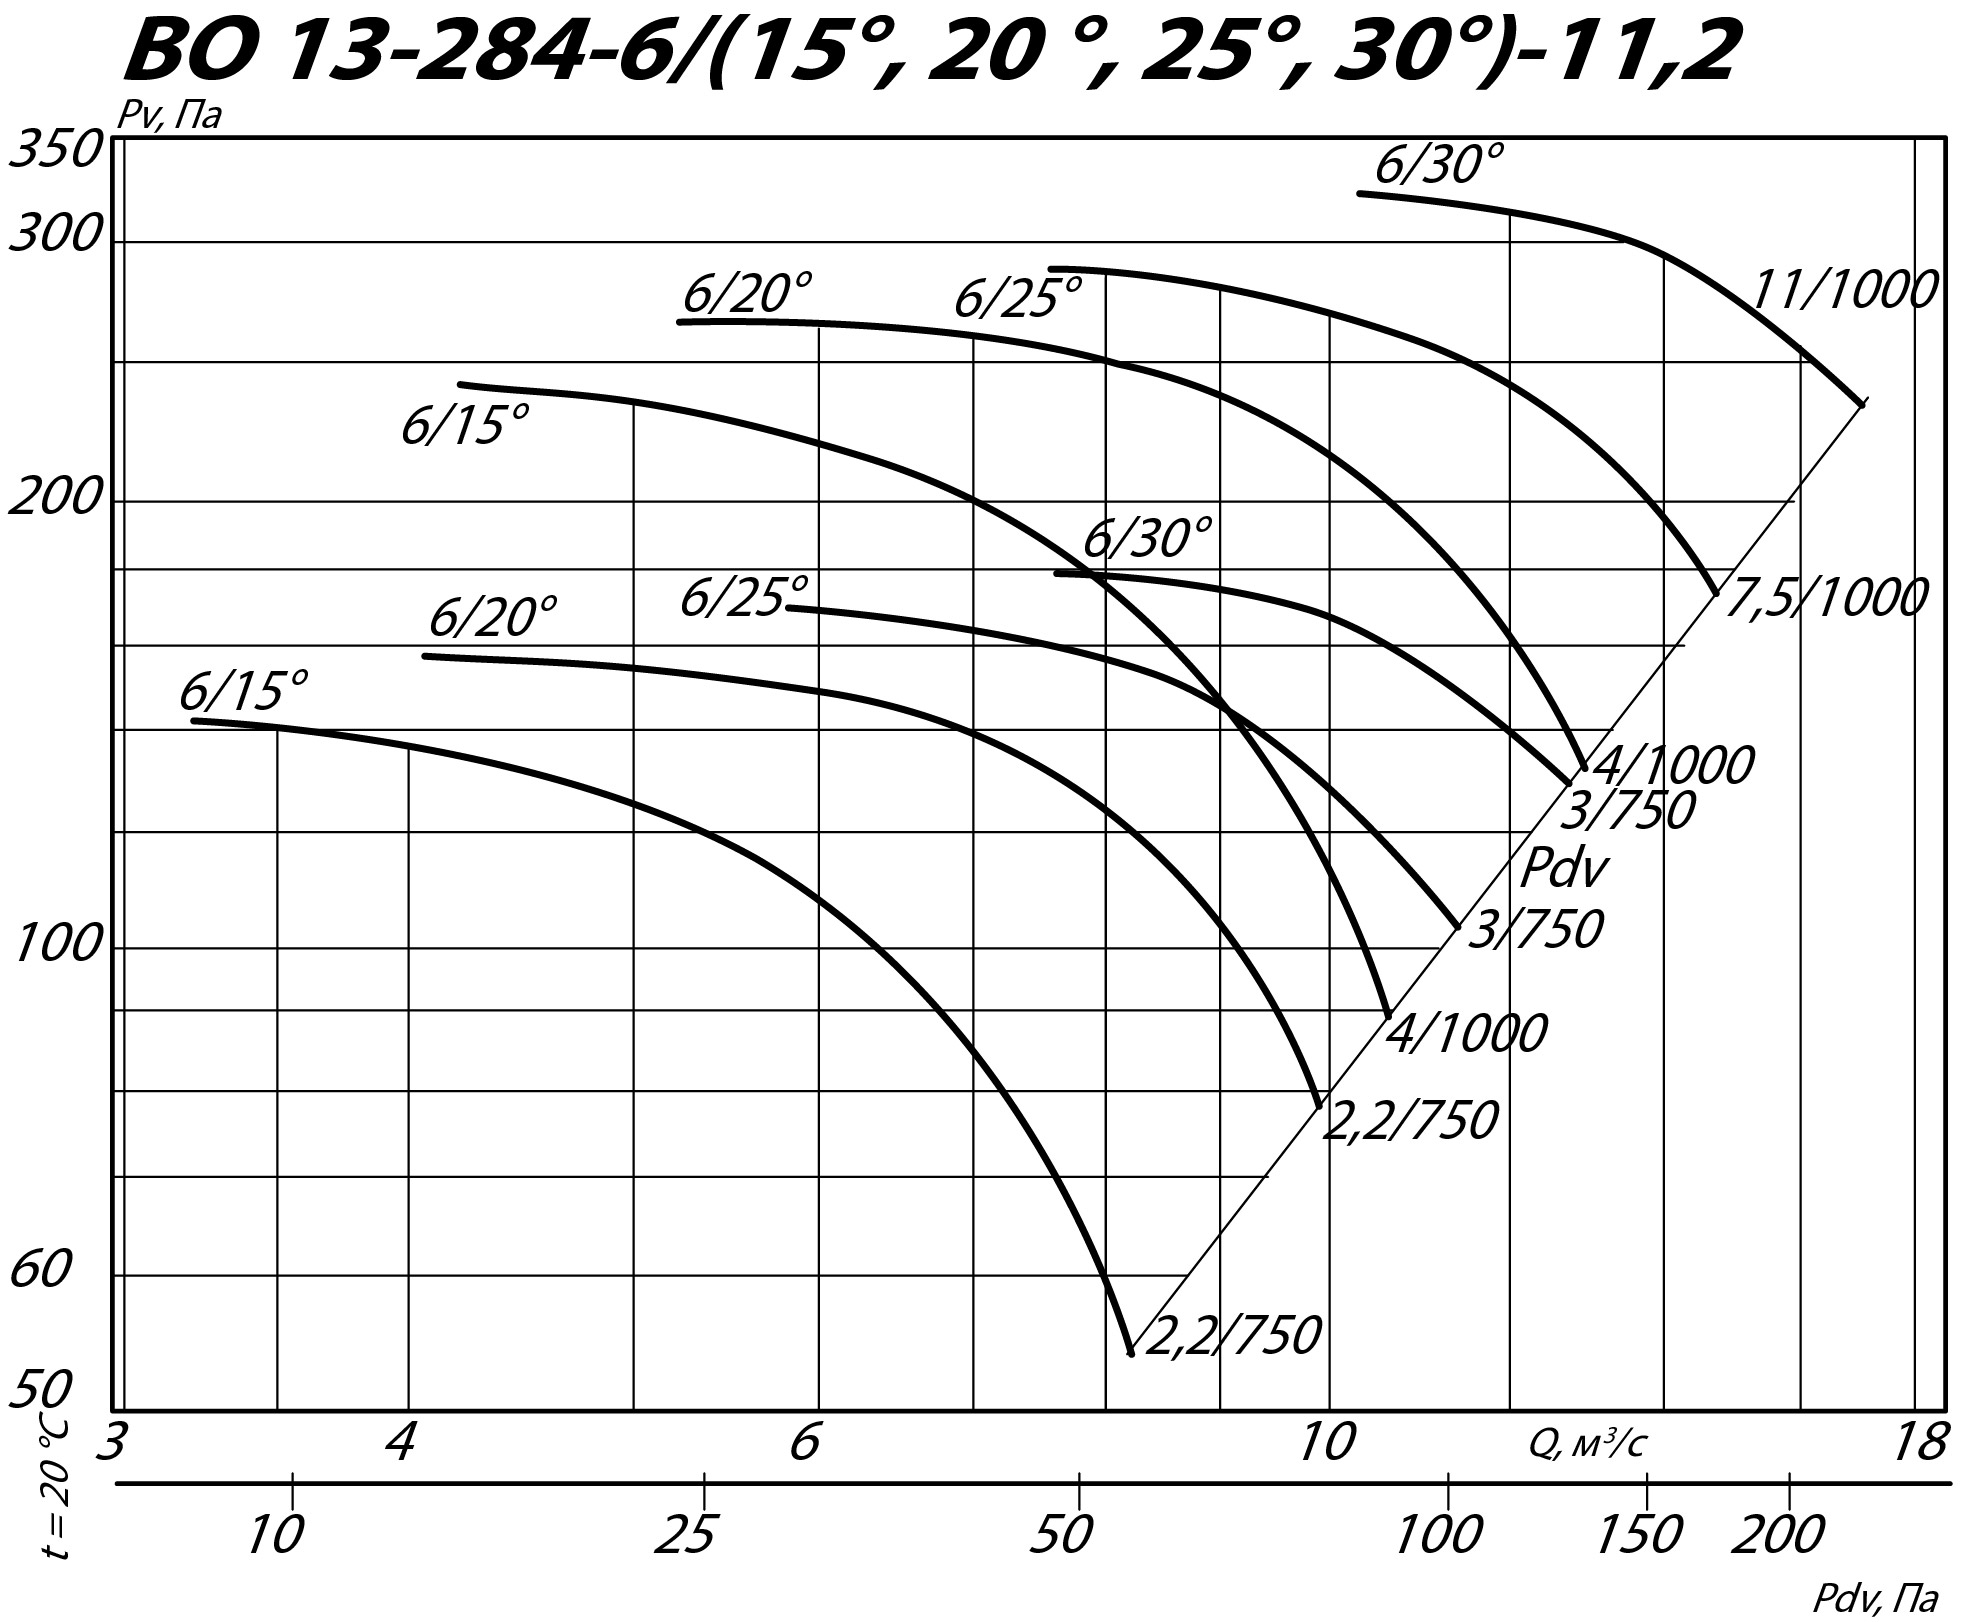 Аэродинамические характеристики осевого вентилятора ВО 13-284 ДУ №11,2